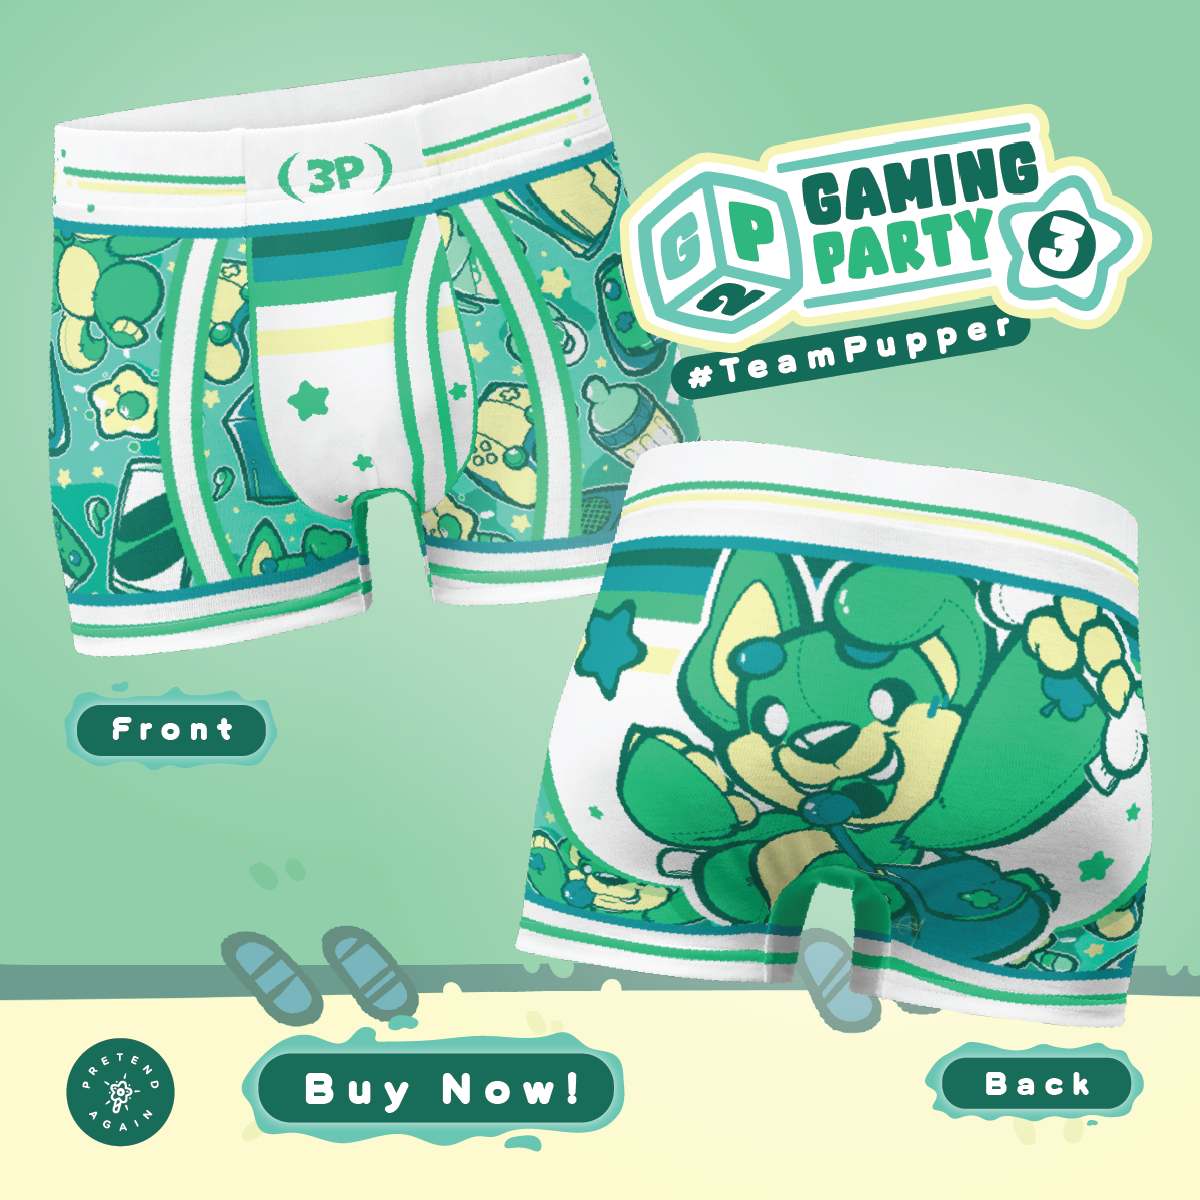 Gaming Party 2 - ToyTrunks Underwear - #TeamPupper